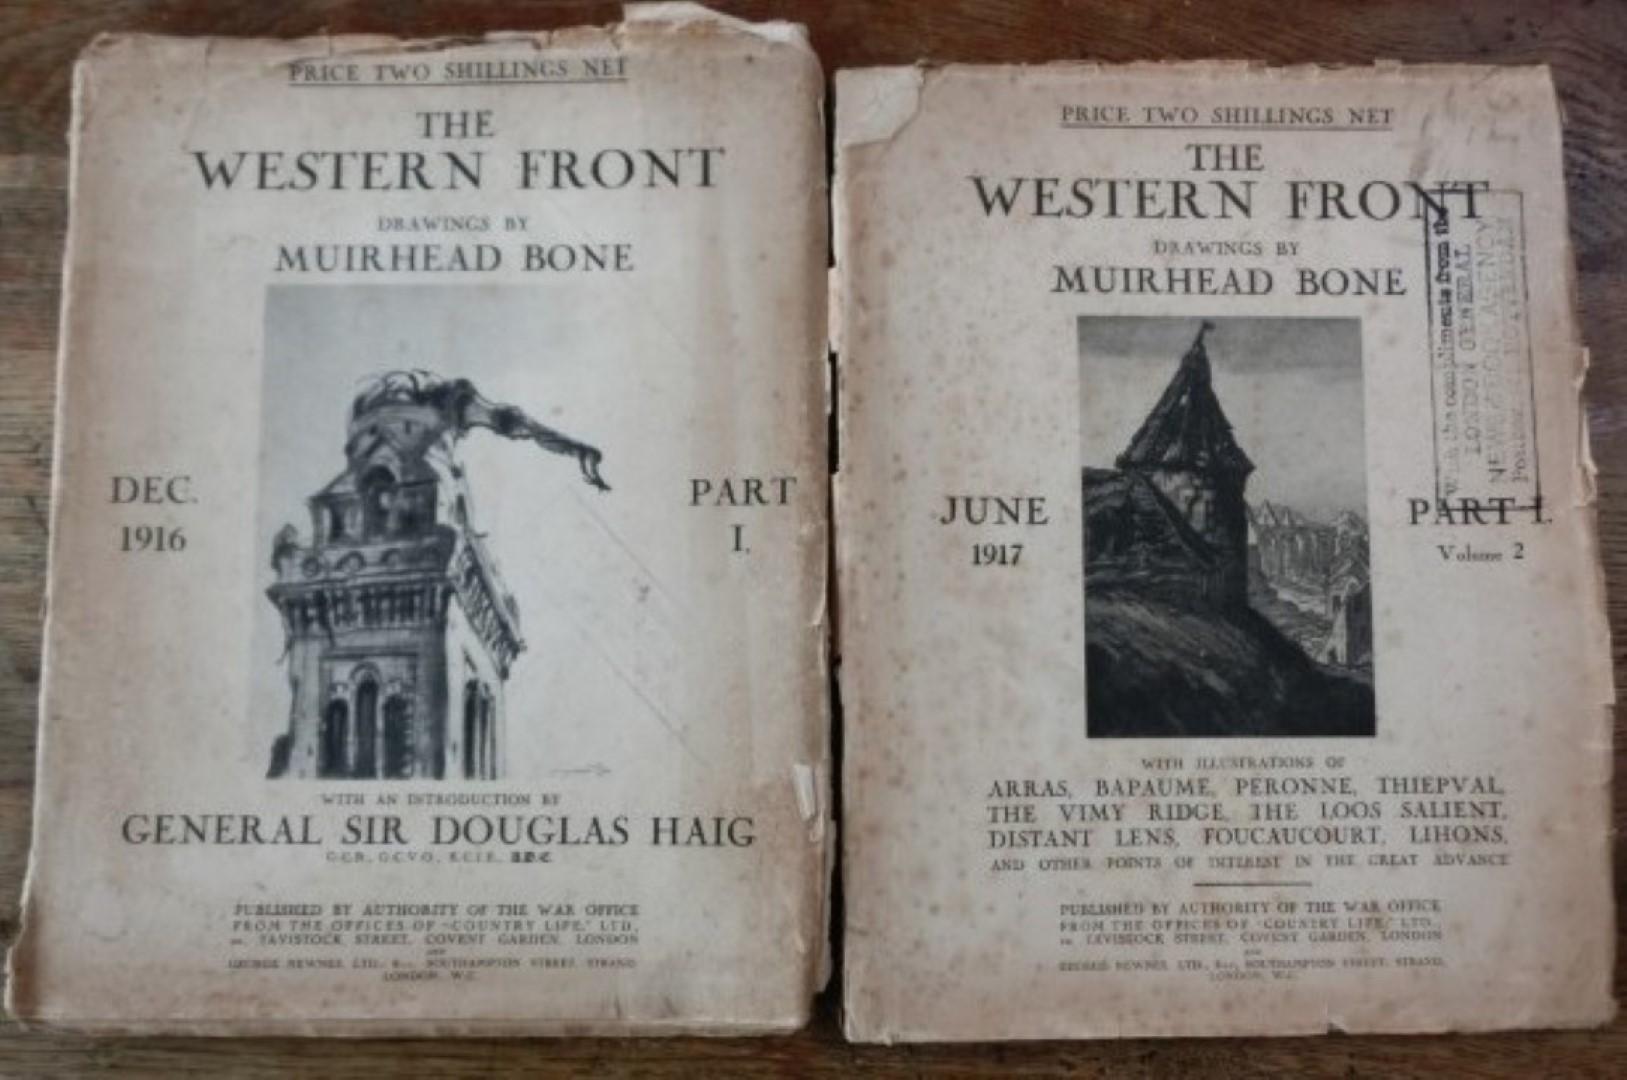 Bone, Muirhead (drawings By) - The western front, part 1, dec 1916 the western front. part 1, volume 2, june 1917  2 afzonderlijke delen.